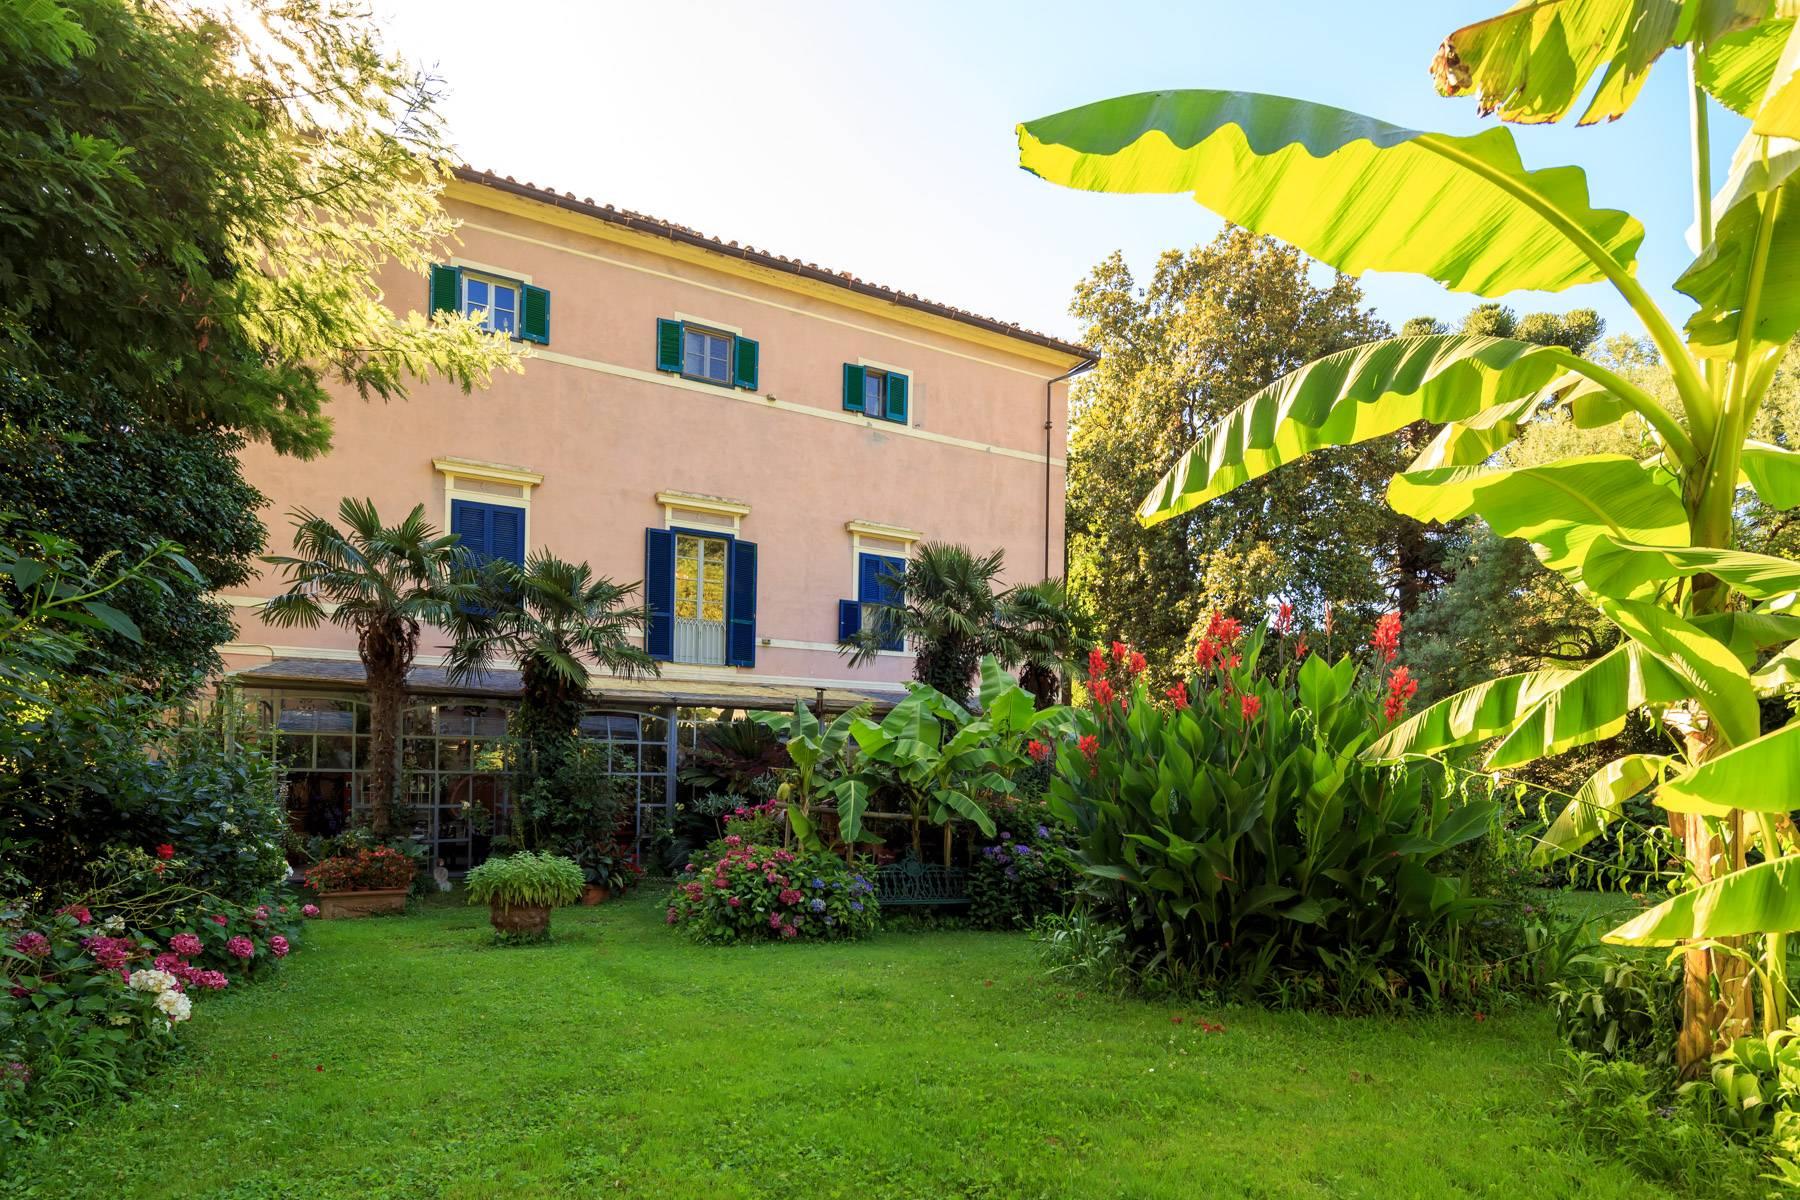 Romantic villa for sale in Pisa - 3